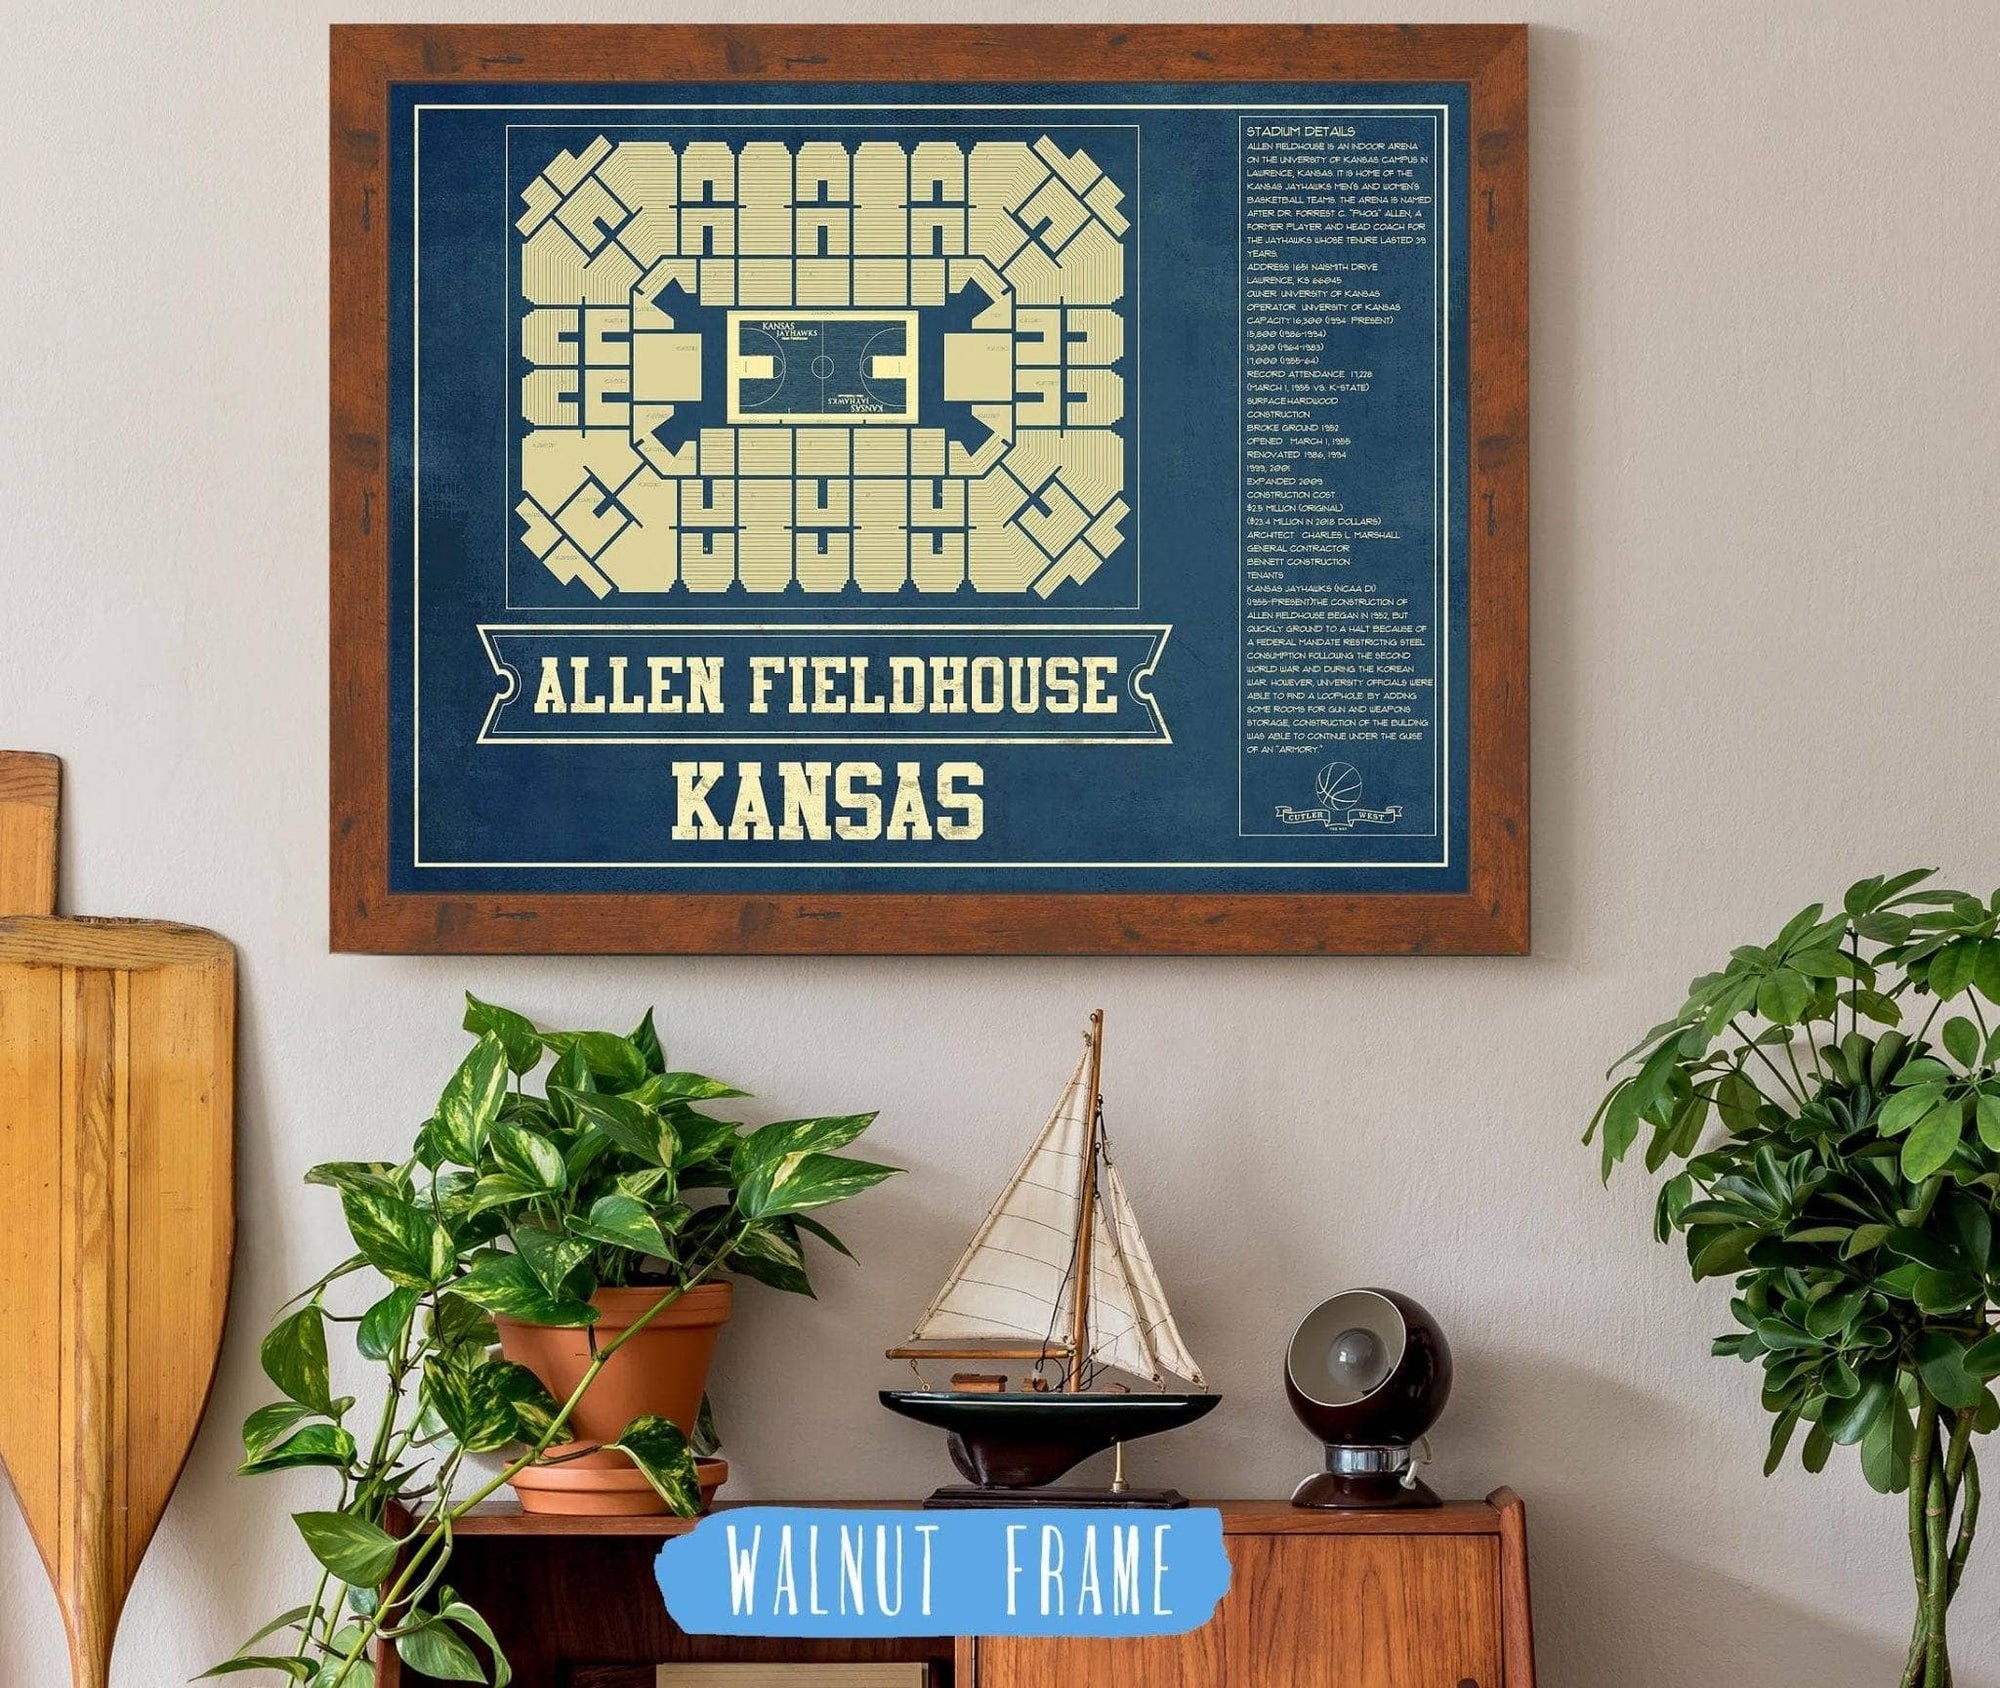 Cutler West Basketball Collection 14" x 11" / Walnut Frame Kansas Jayhawks - Allen Fieldhouse Seating Chart - College Basketball Blueprint Art 662070564_83693